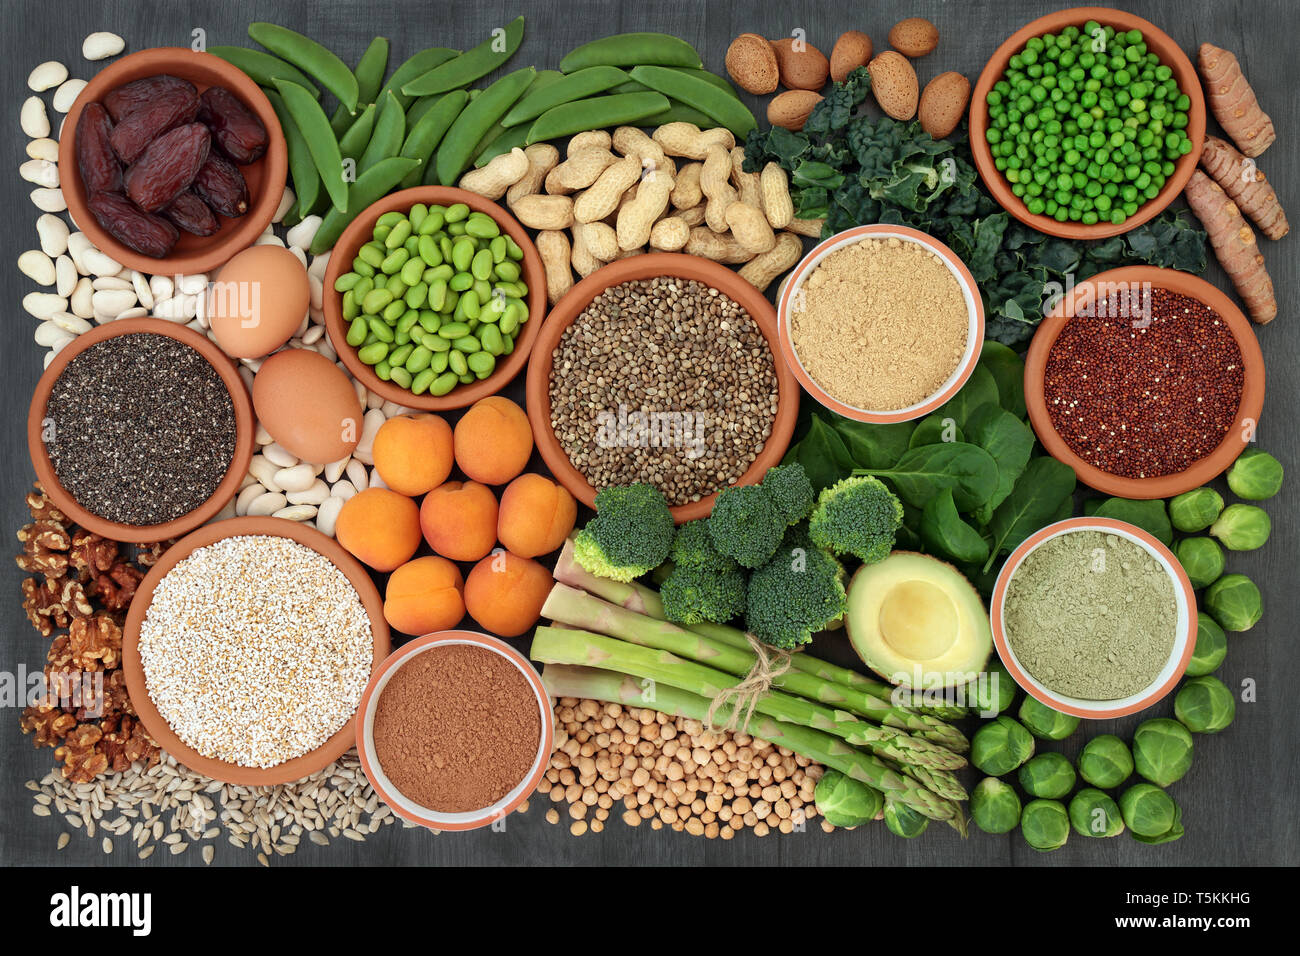 Aliments santé riches en protéines de légumineuses, légumes frais, fruits secs, céréales, produits laitiers, supplément en poudre, les graines et les noix. Banque D'Images